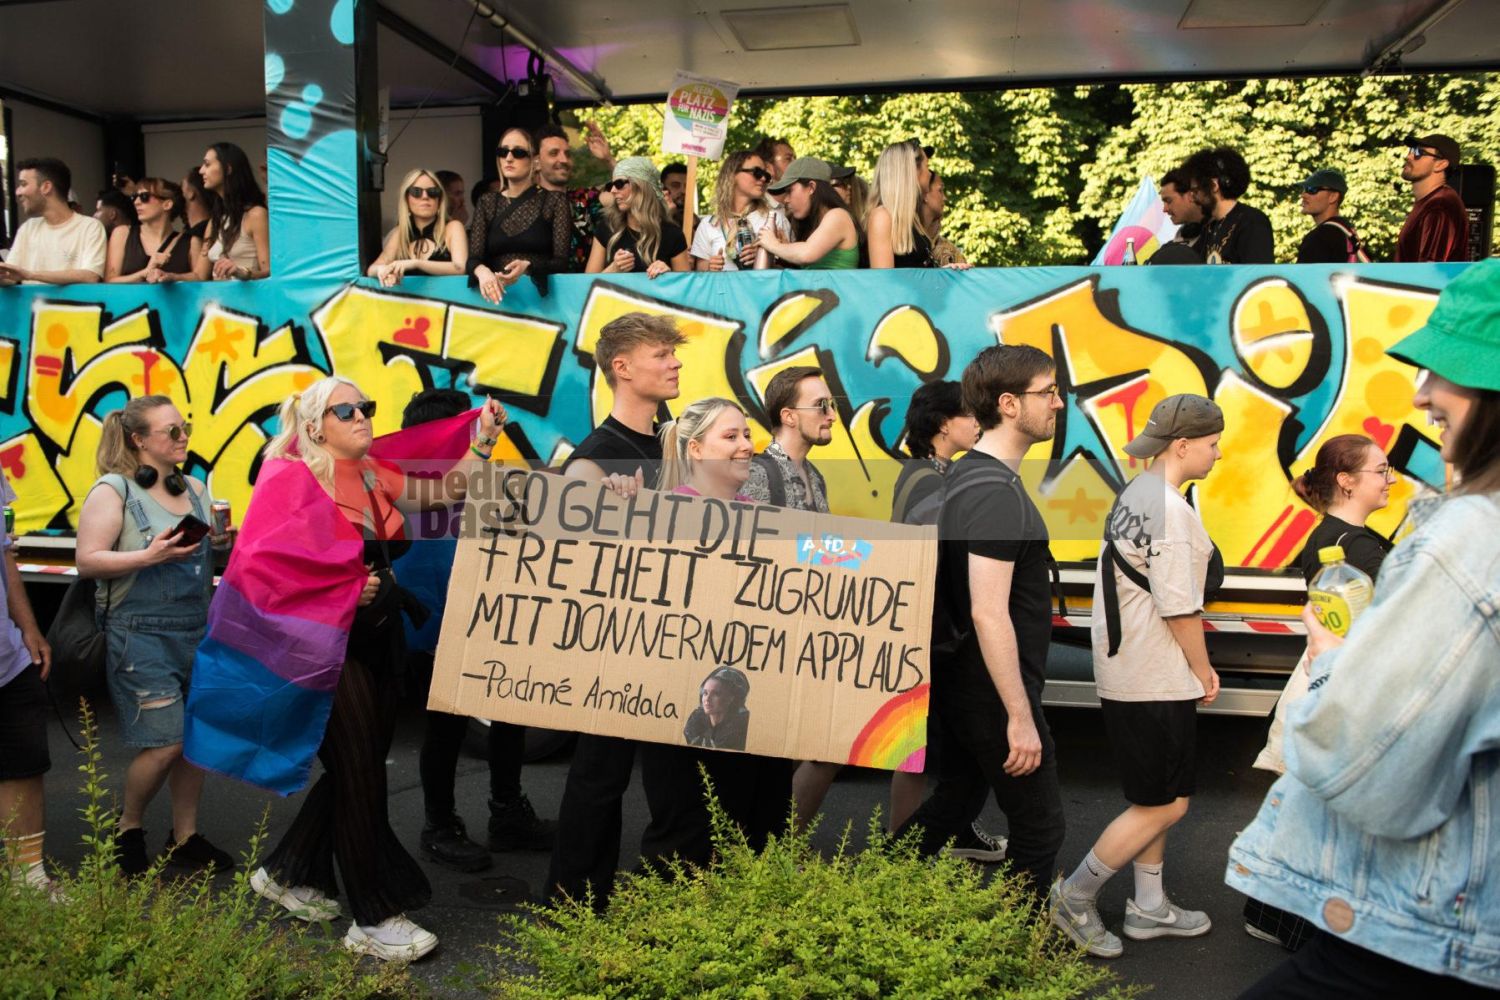 Laut - Bunt - Entschlossen! Protest gegen den Bundesparteitag der AfD in Essen <i>Bild Christian Schneider/R-mediabase</i> <br><a href=/confor2/?bld=83030&pst=82663&aid=615&dc=1321&i1=Christian%20Schneider/R-mediabase><strong>Downloadanfrage</strong></a>  